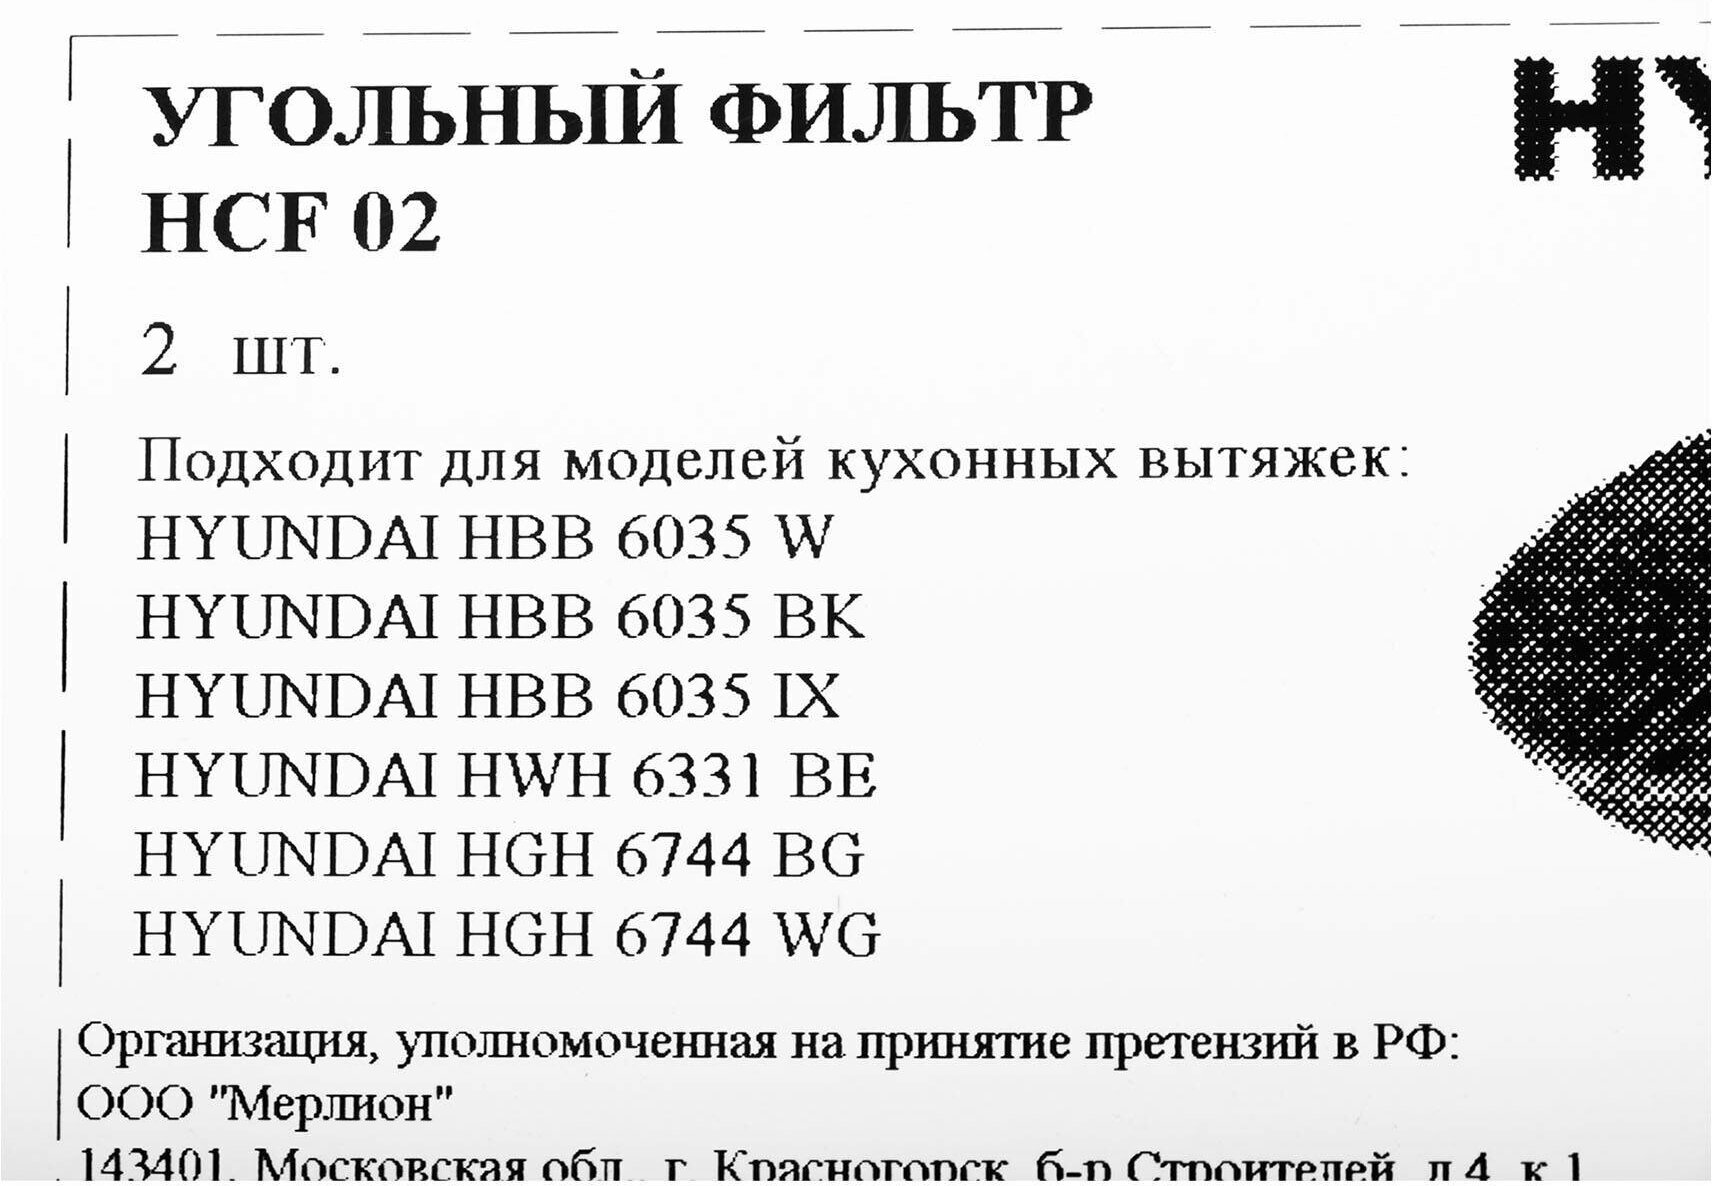 Комплект фильтров Hyundai HCF 02 черный, в комплекте 2шт. - фото №7